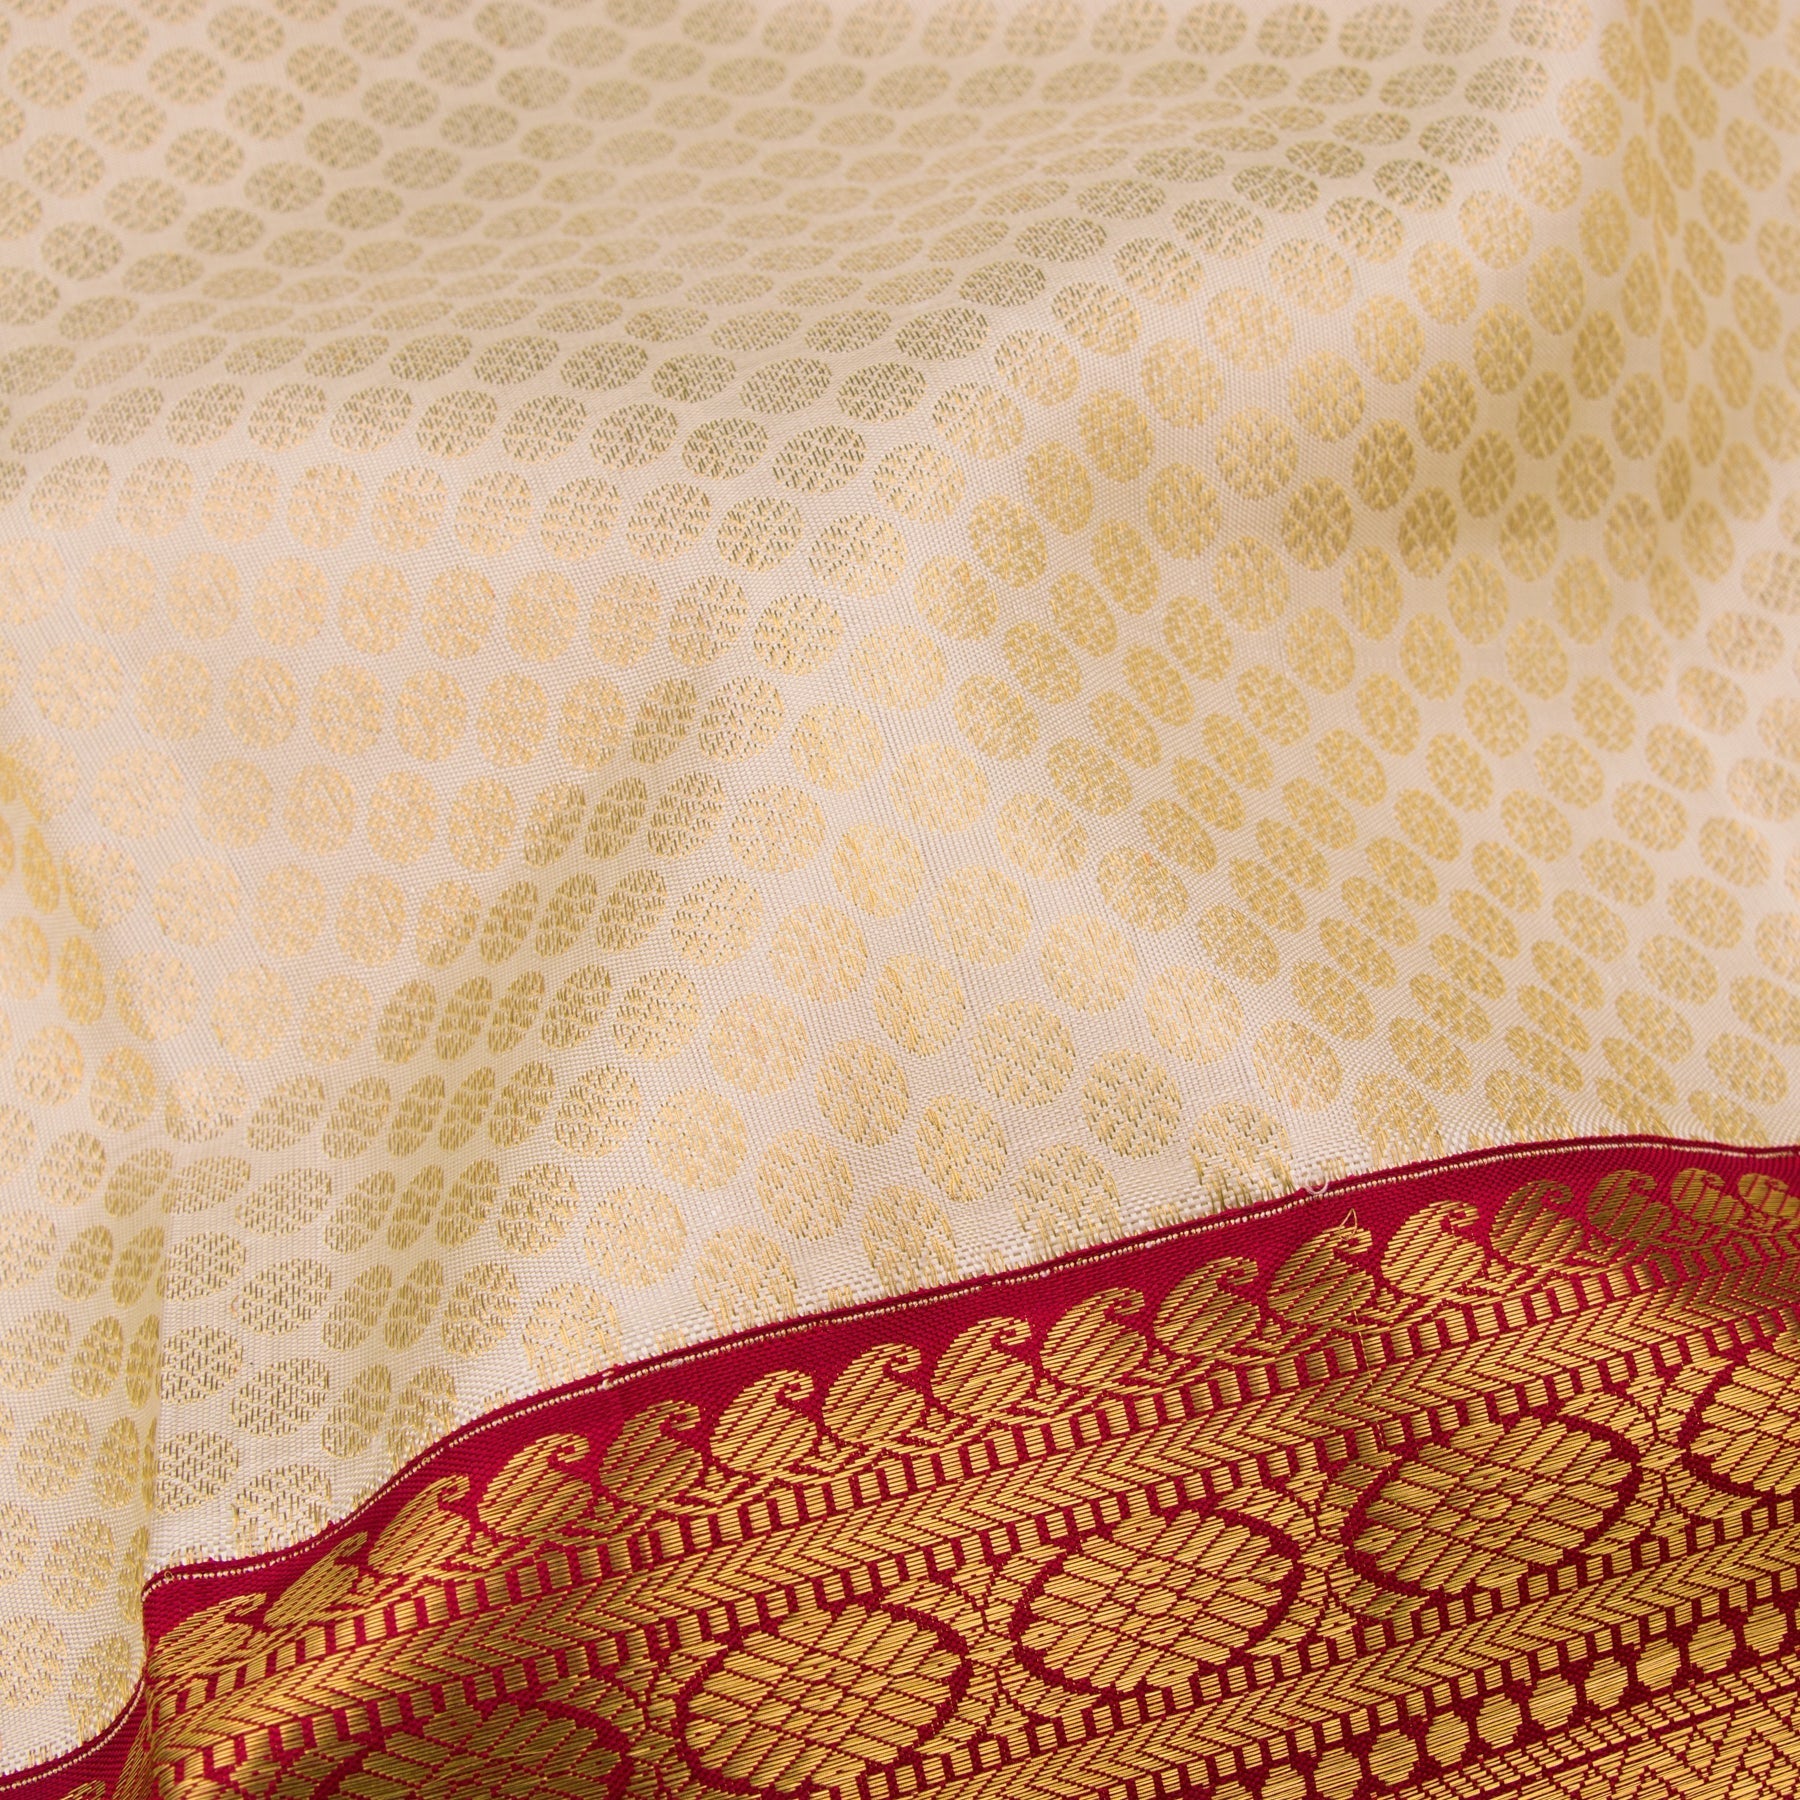 Kanakavalli Kanjivaram Silk Sari 22-110-HS001-12498 - Fabric View